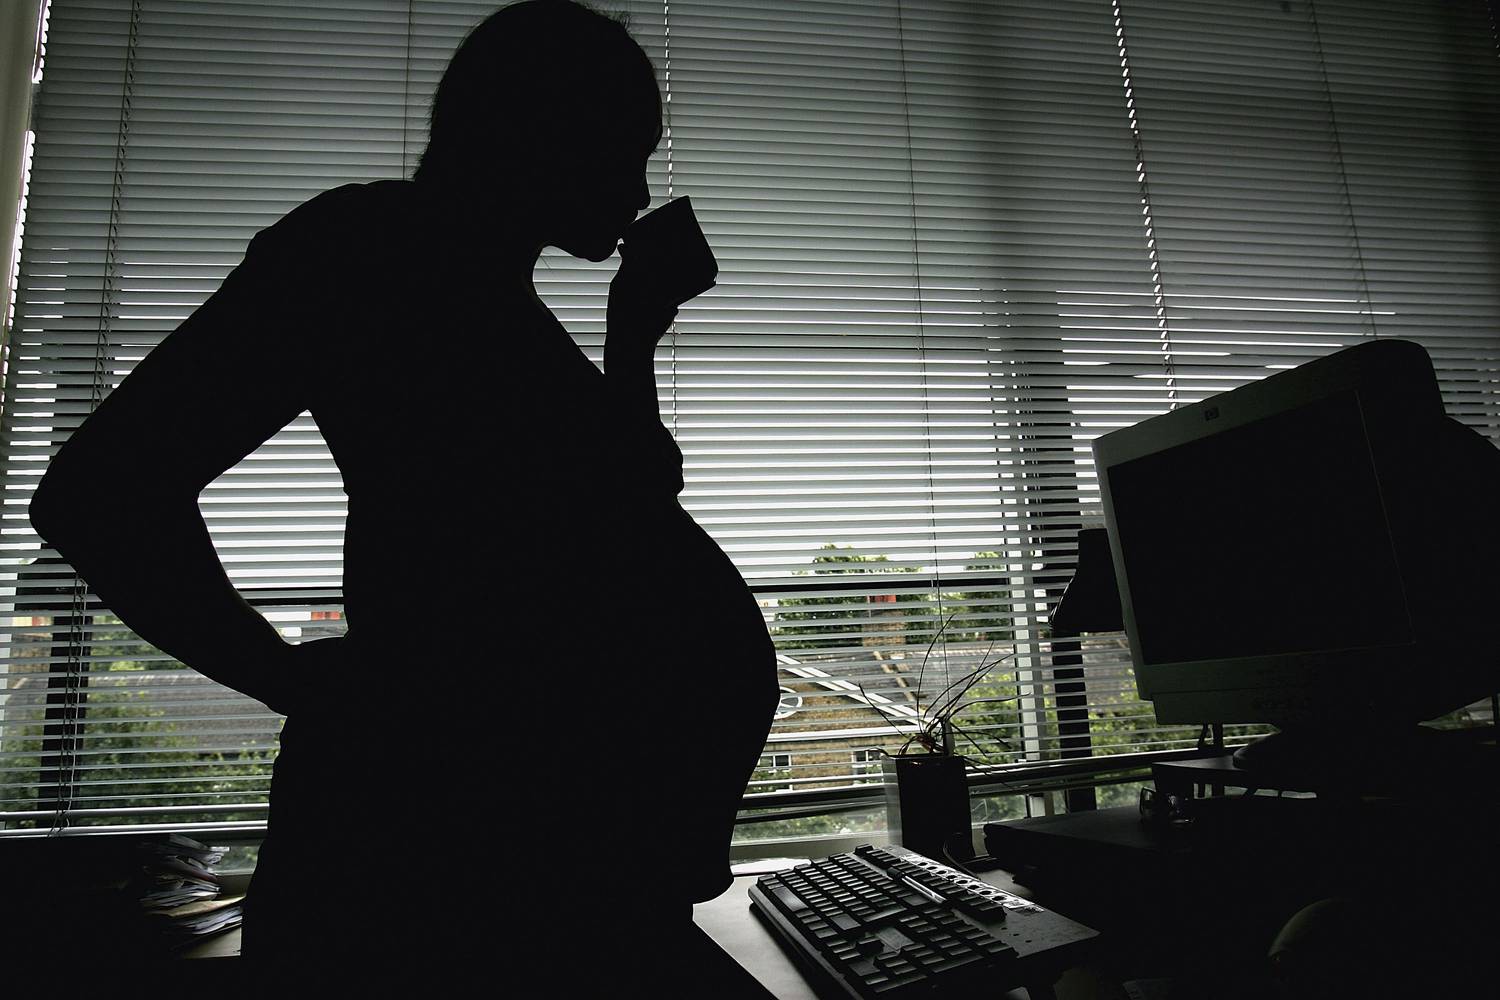 Mi a helyzet a várandós nőkkel a munkahelyen? | szepkepek.hu